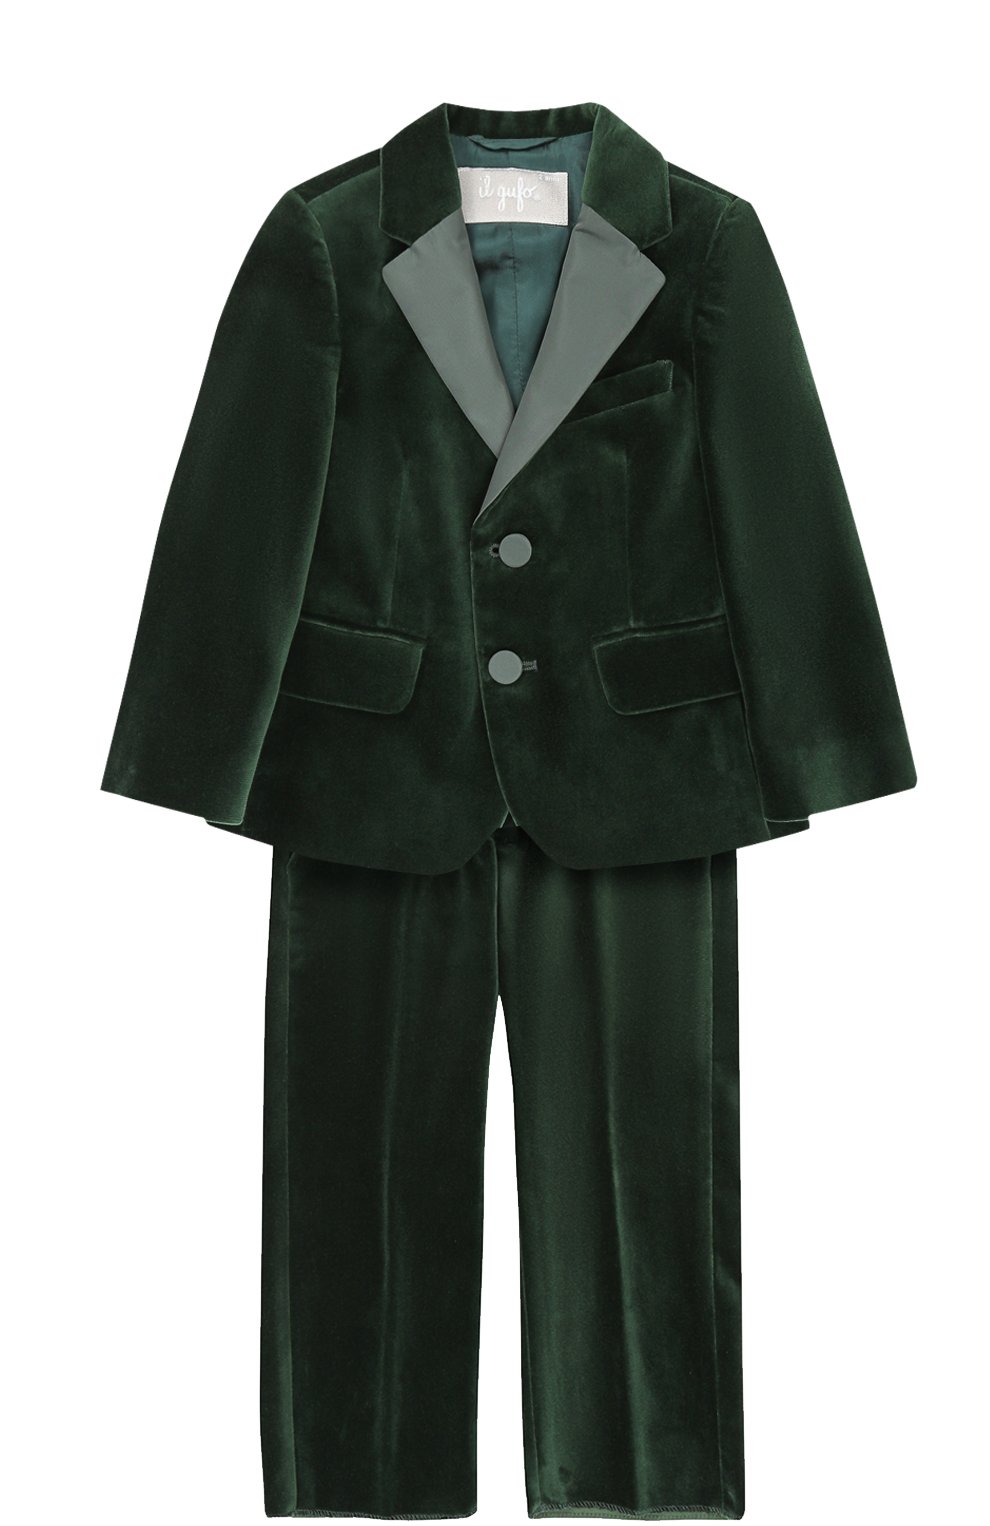 Хлопковый костюм с пиджаком на двух пуговицах Il Gufo